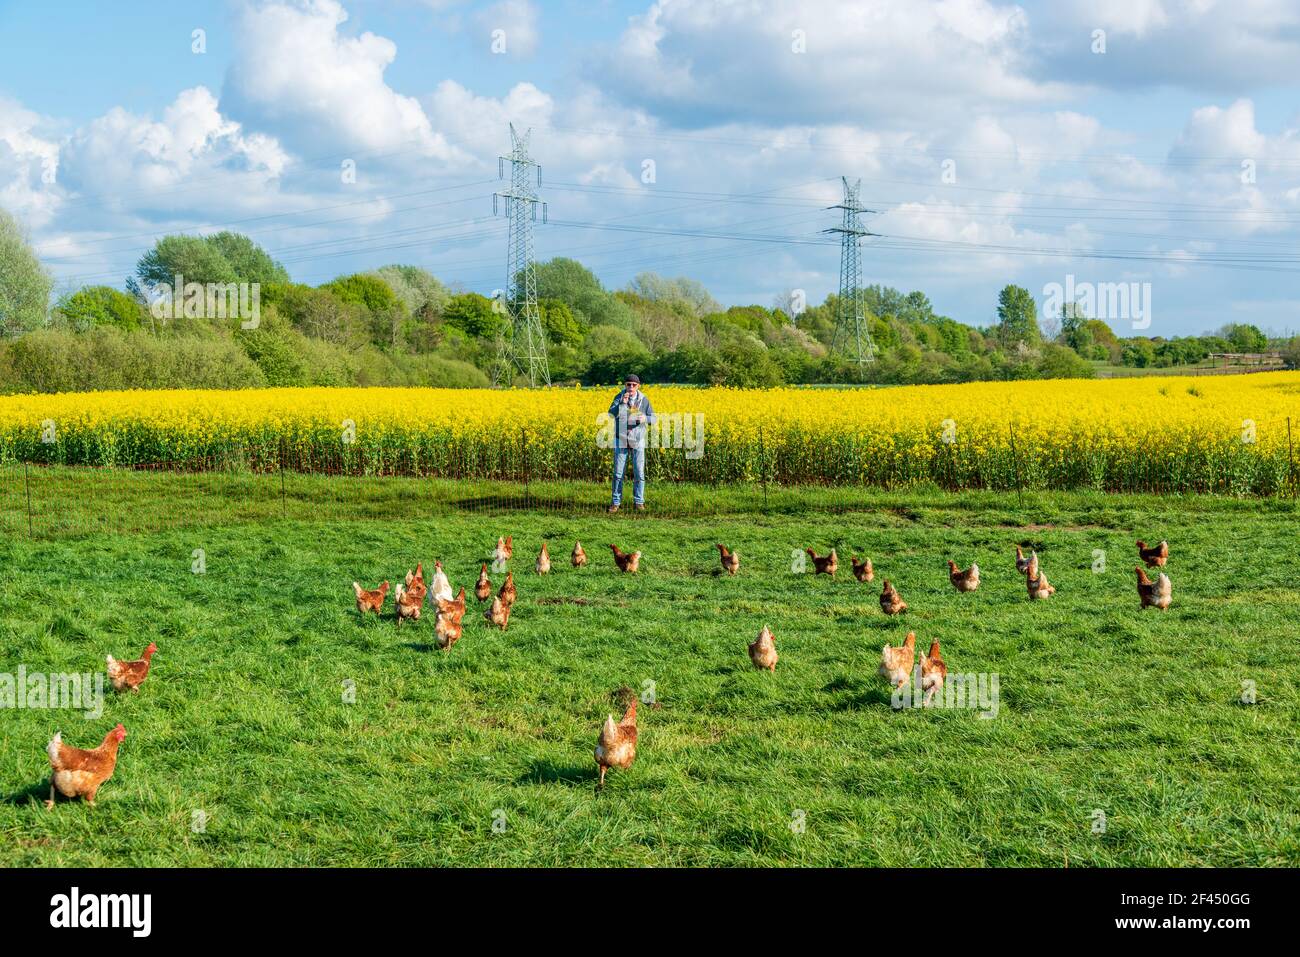 Artgerechte Tierhaltung in Schleswig-Holstein. Frei laufende Hühner auf einer Wiese in Moorsee bei Kiel Stock Photo